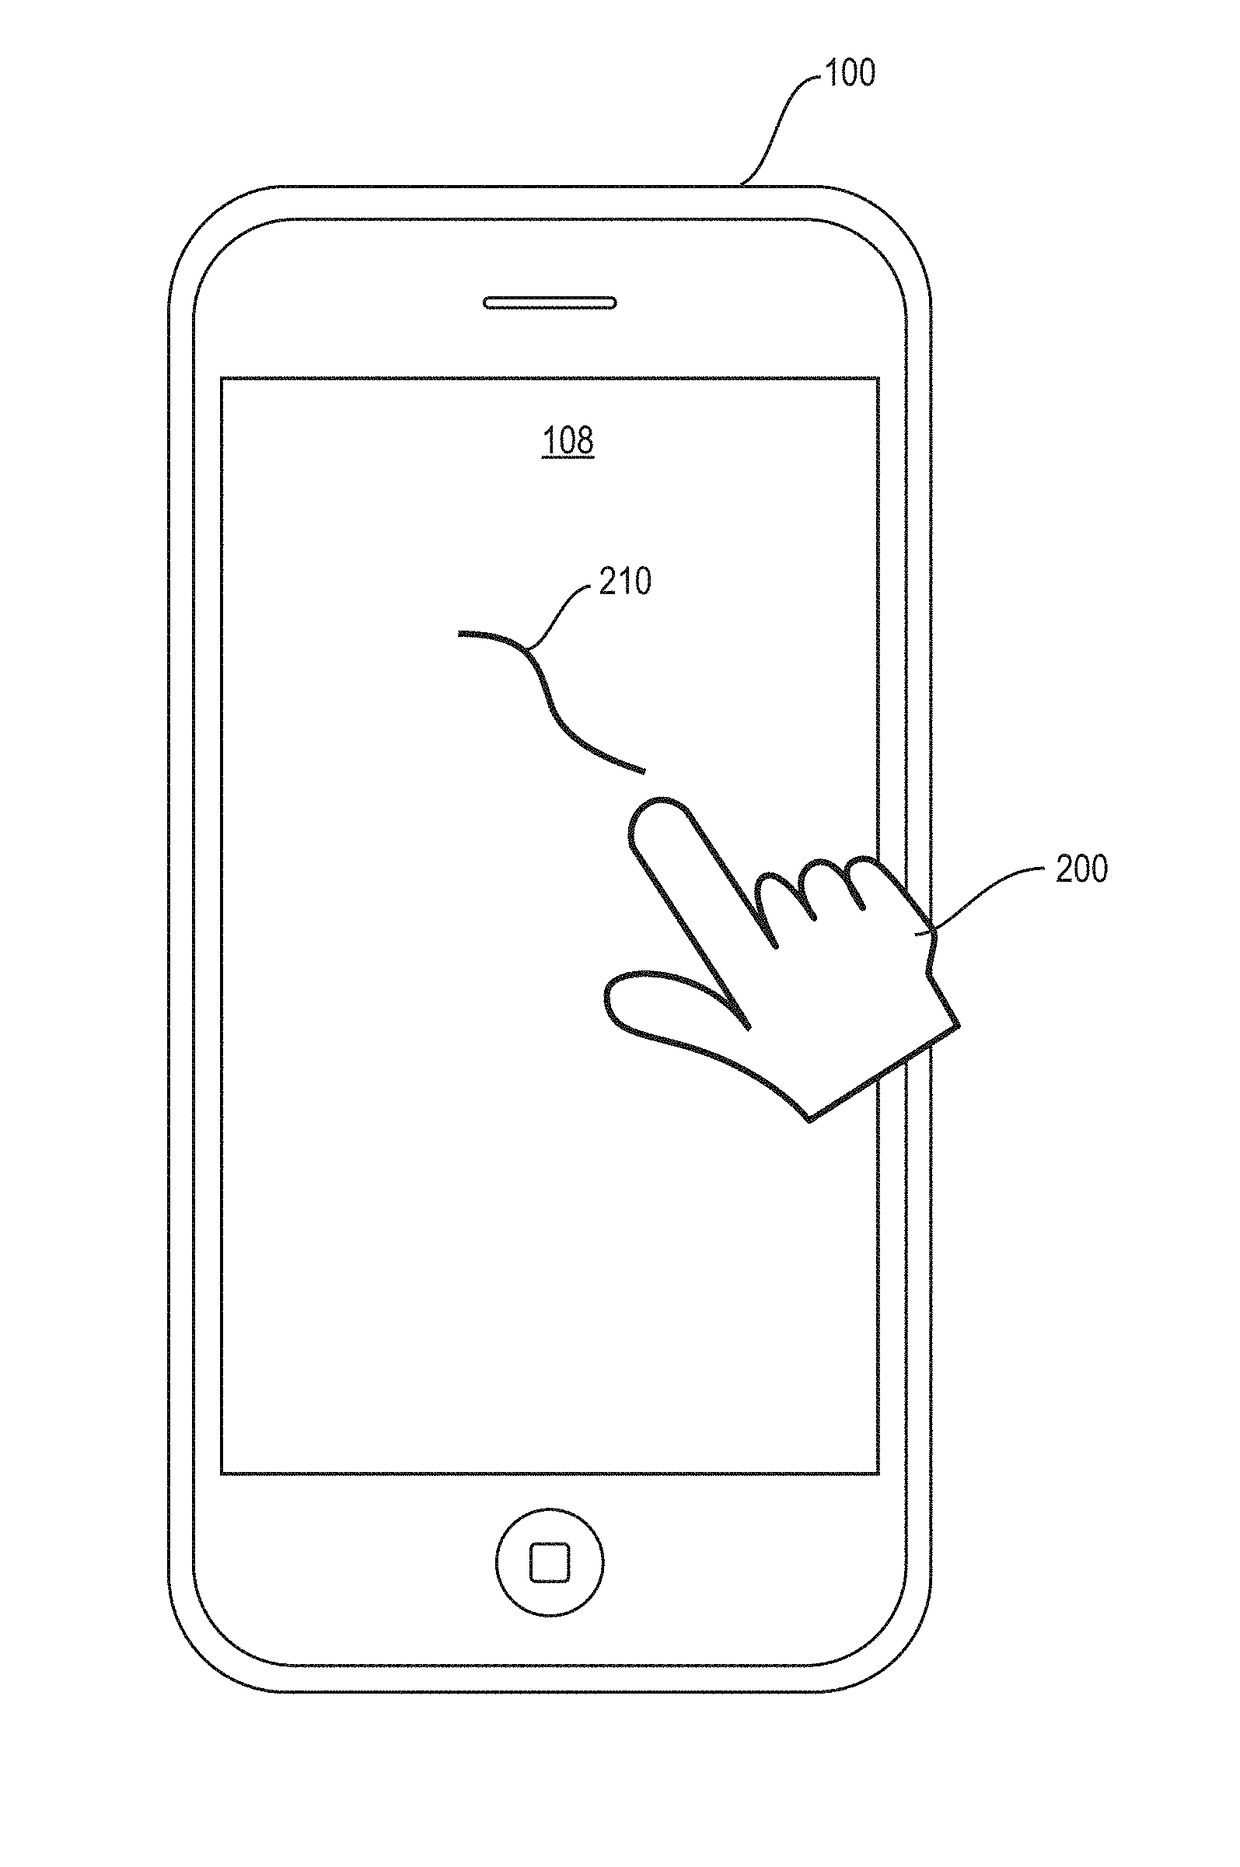 Fingerprint based smart phone user verification